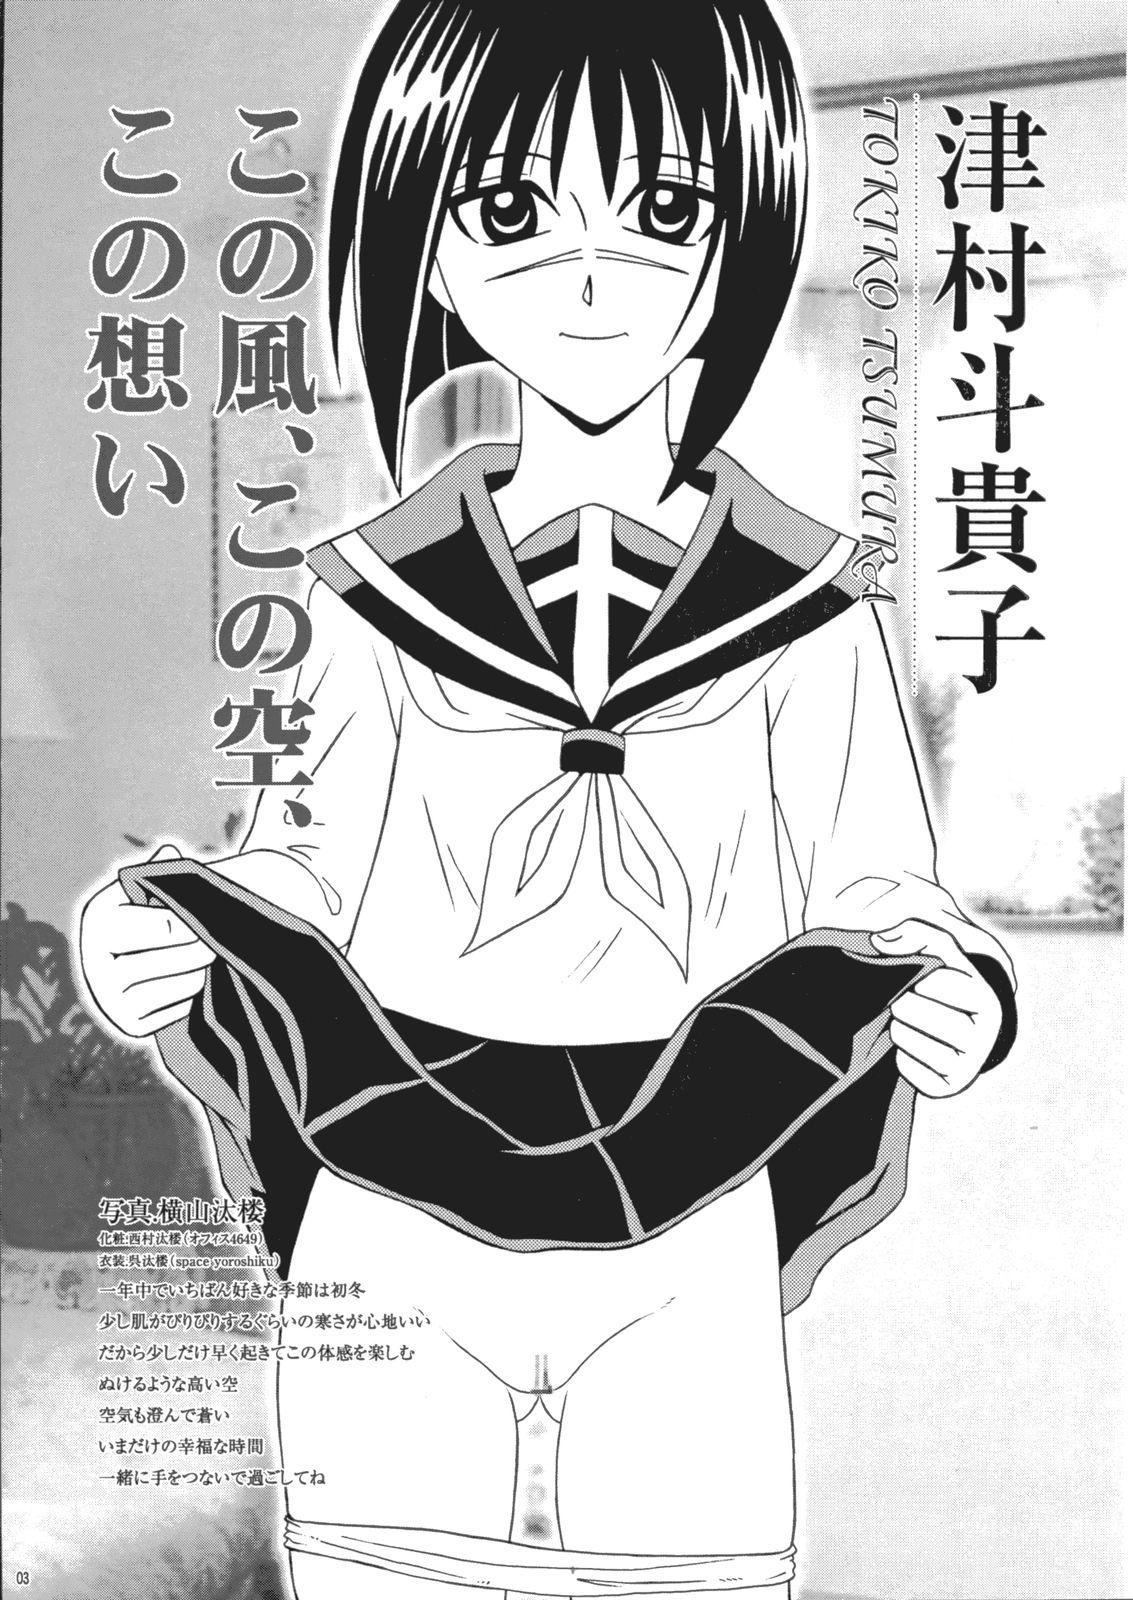 Hard Sex Saku-chan Kurabu Vol.03 - Naruto One piece Ichigo 100 Is Hikaru no go Soft - Page 2